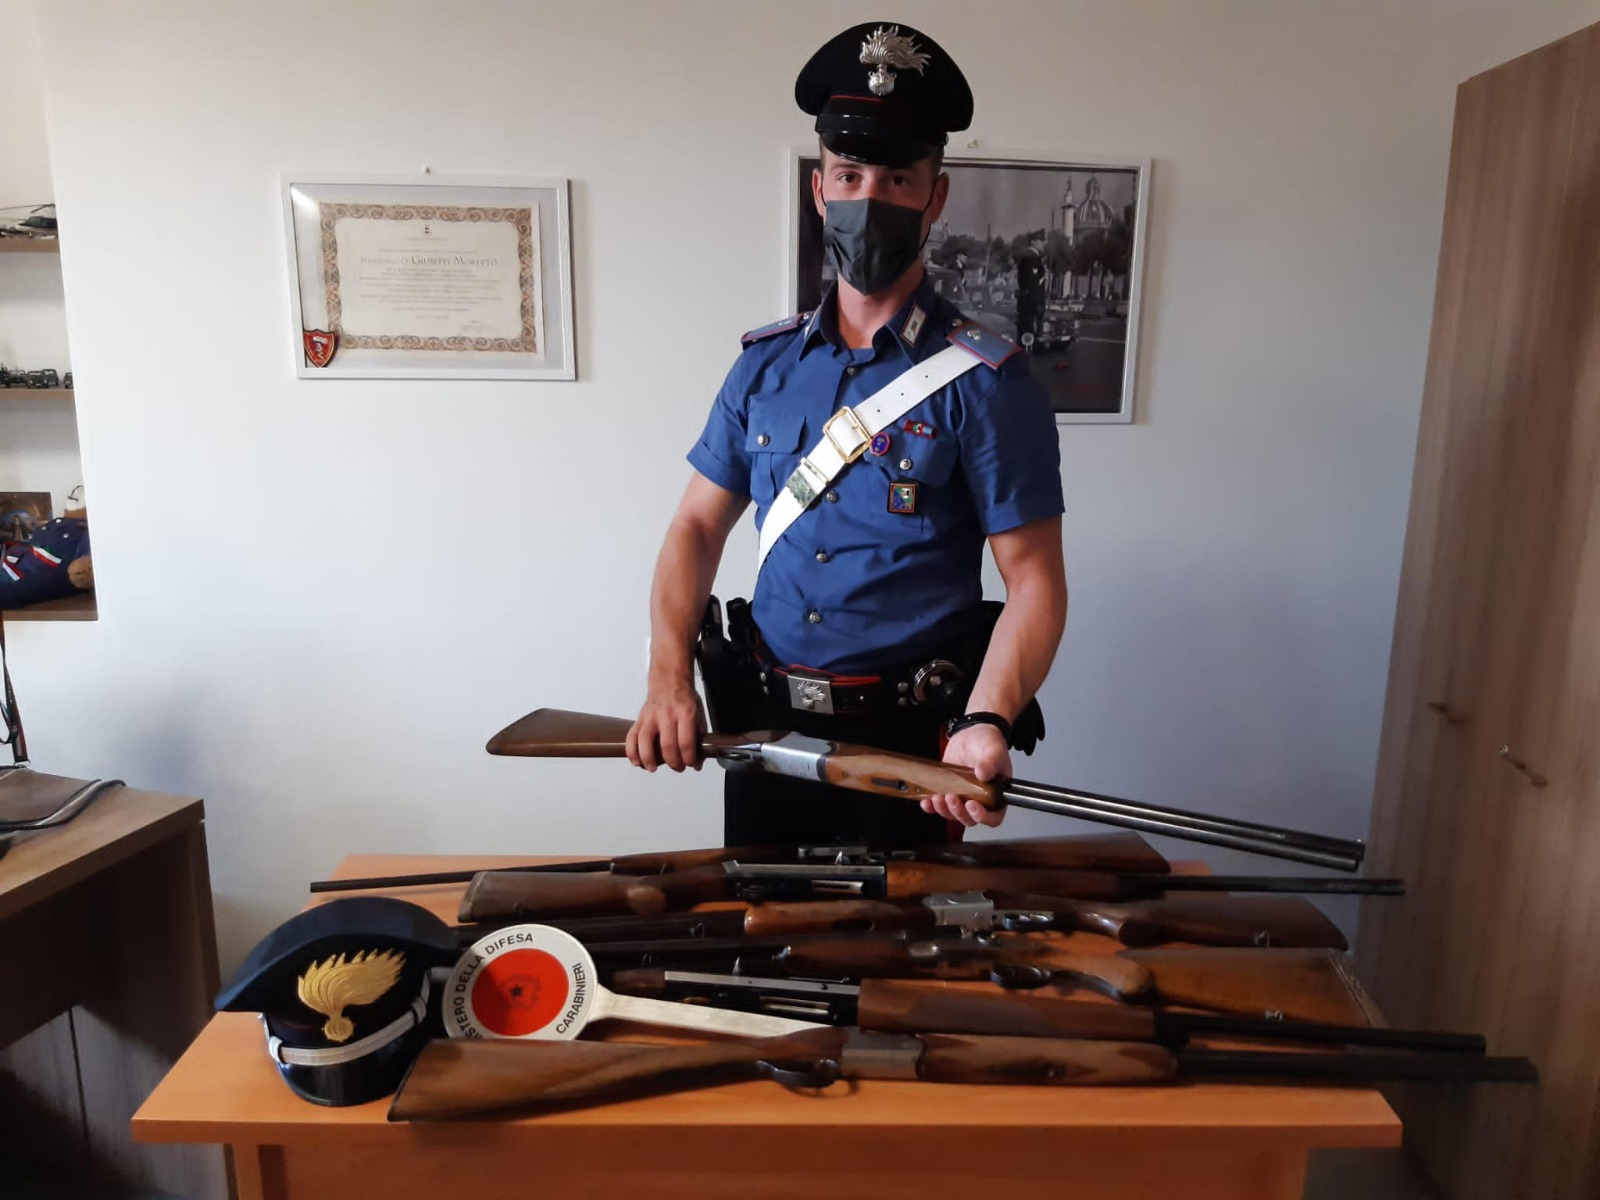 Macerata – Deteneva 7 fucili da caccia in casa senza permesso, 73enne denunciato